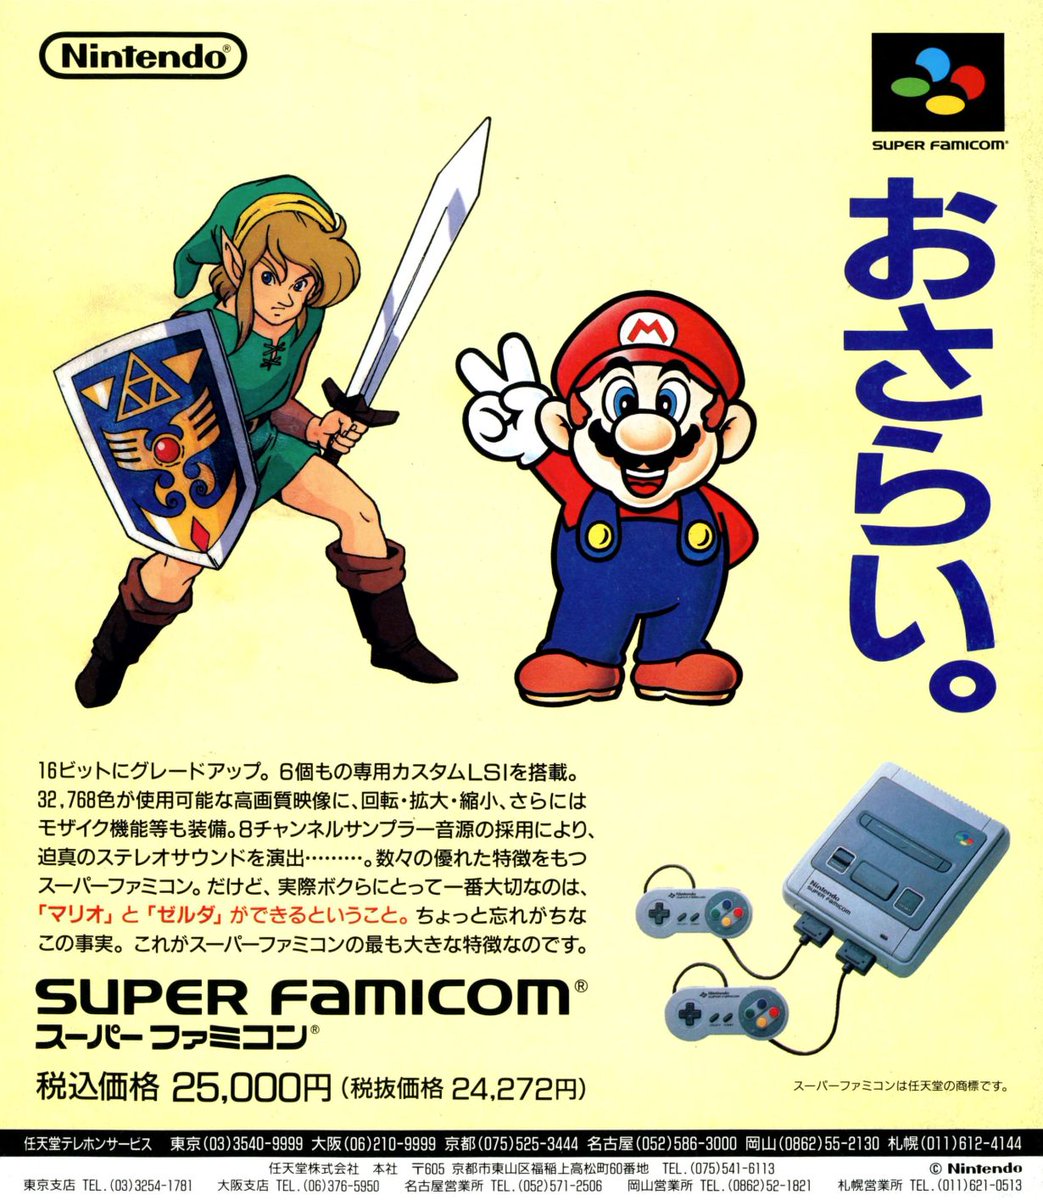 Super Famicom / Print ad / Nintendo / 1992